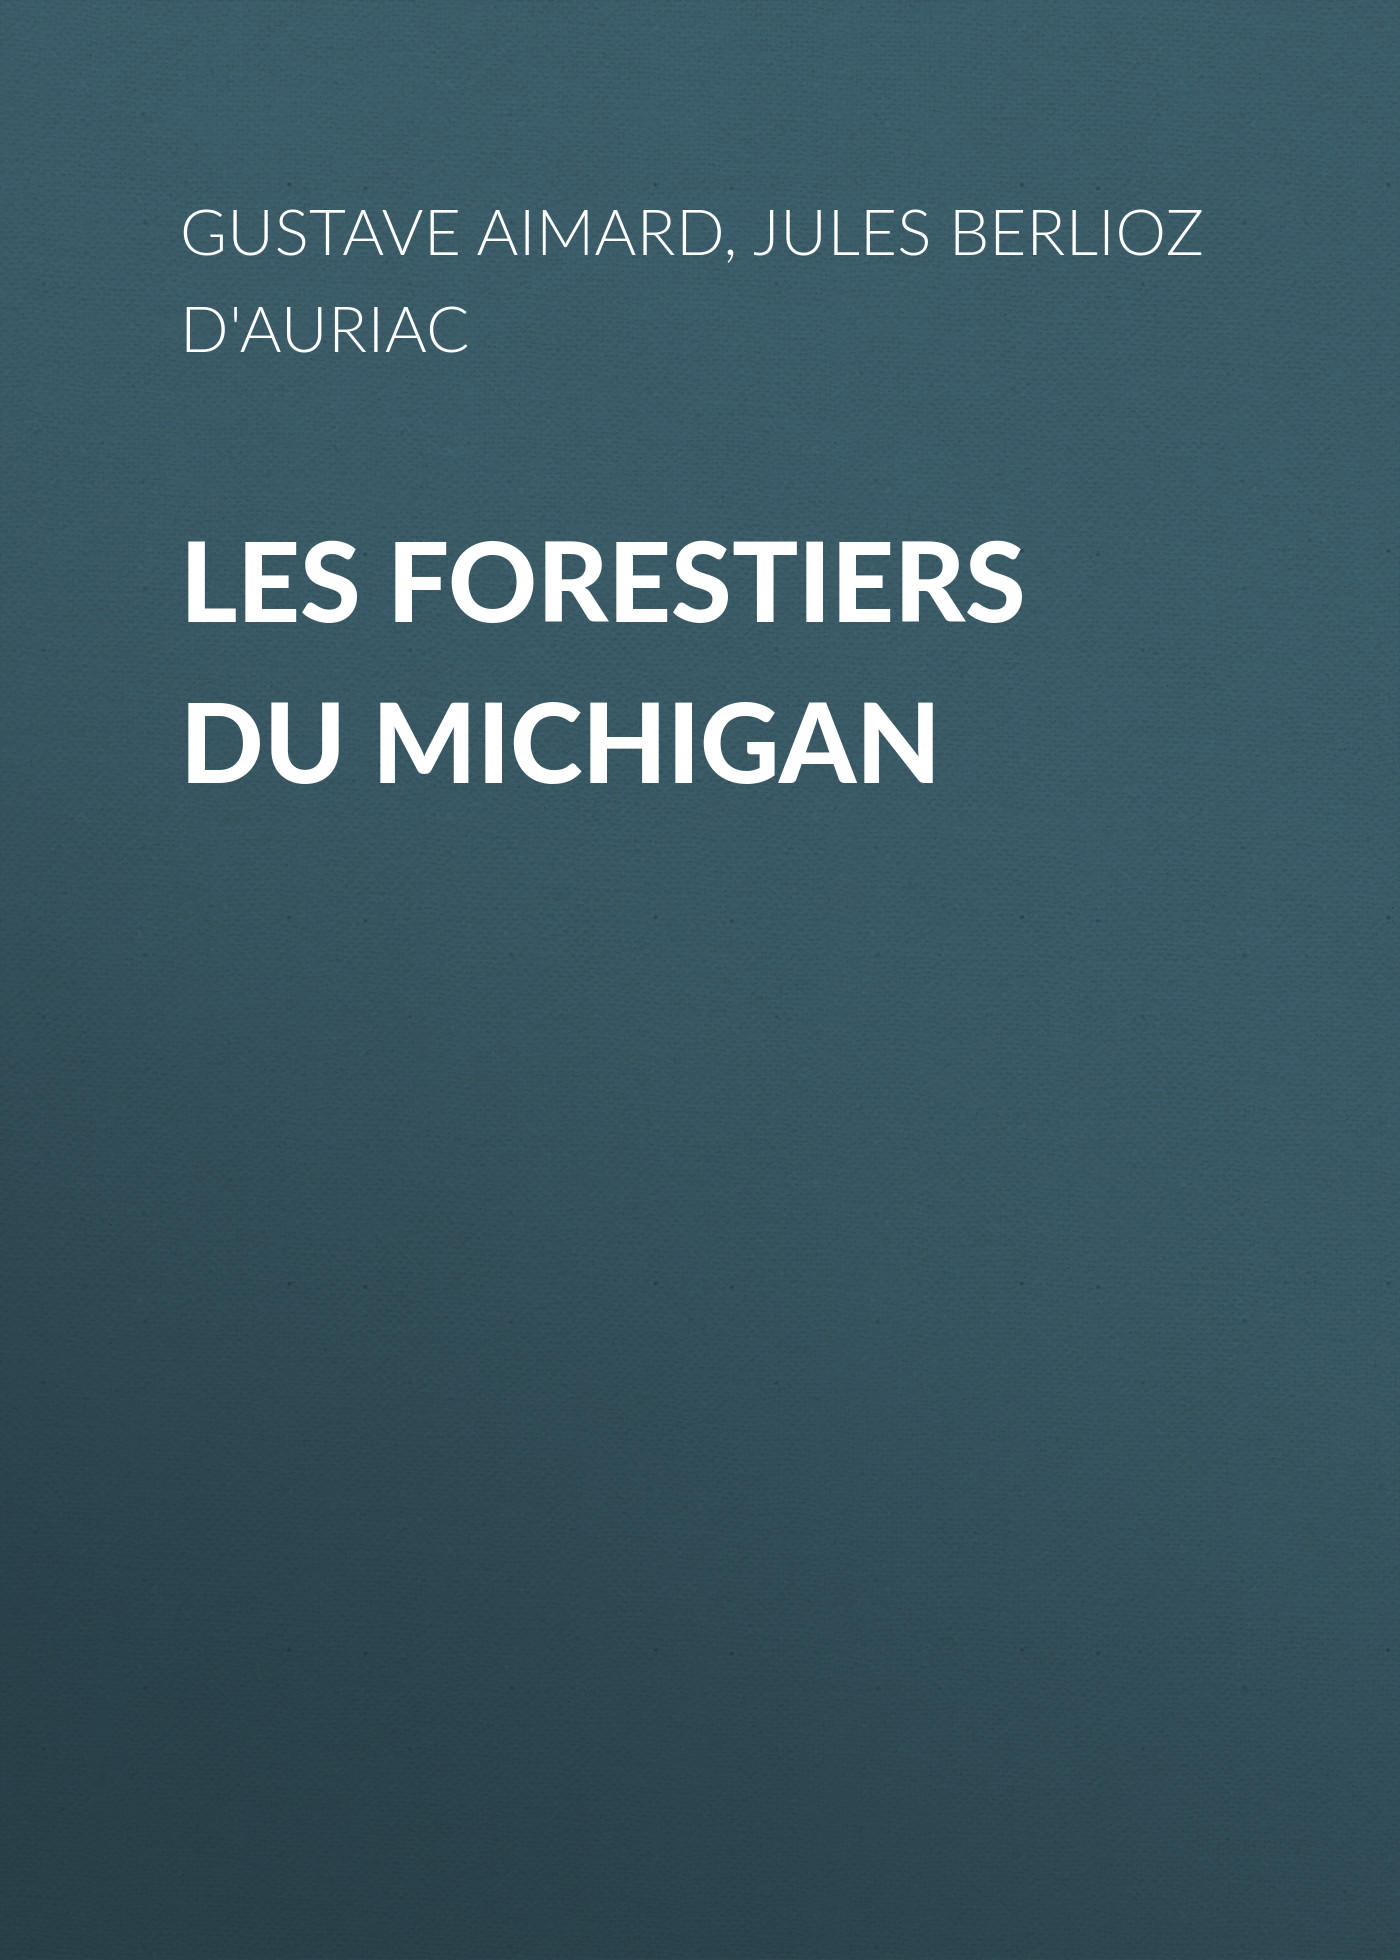 Книга Les Forestiers du Michigan из серии , созданная Gustave Aimard, Jules Berlioz d'Auriac, может относится к жанру Зарубежная классика, Зарубежная старинная литература, Иностранные языки. Стоимость электронной книги Les Forestiers du Michigan с идентификатором 24175268 составляет 0 руб.